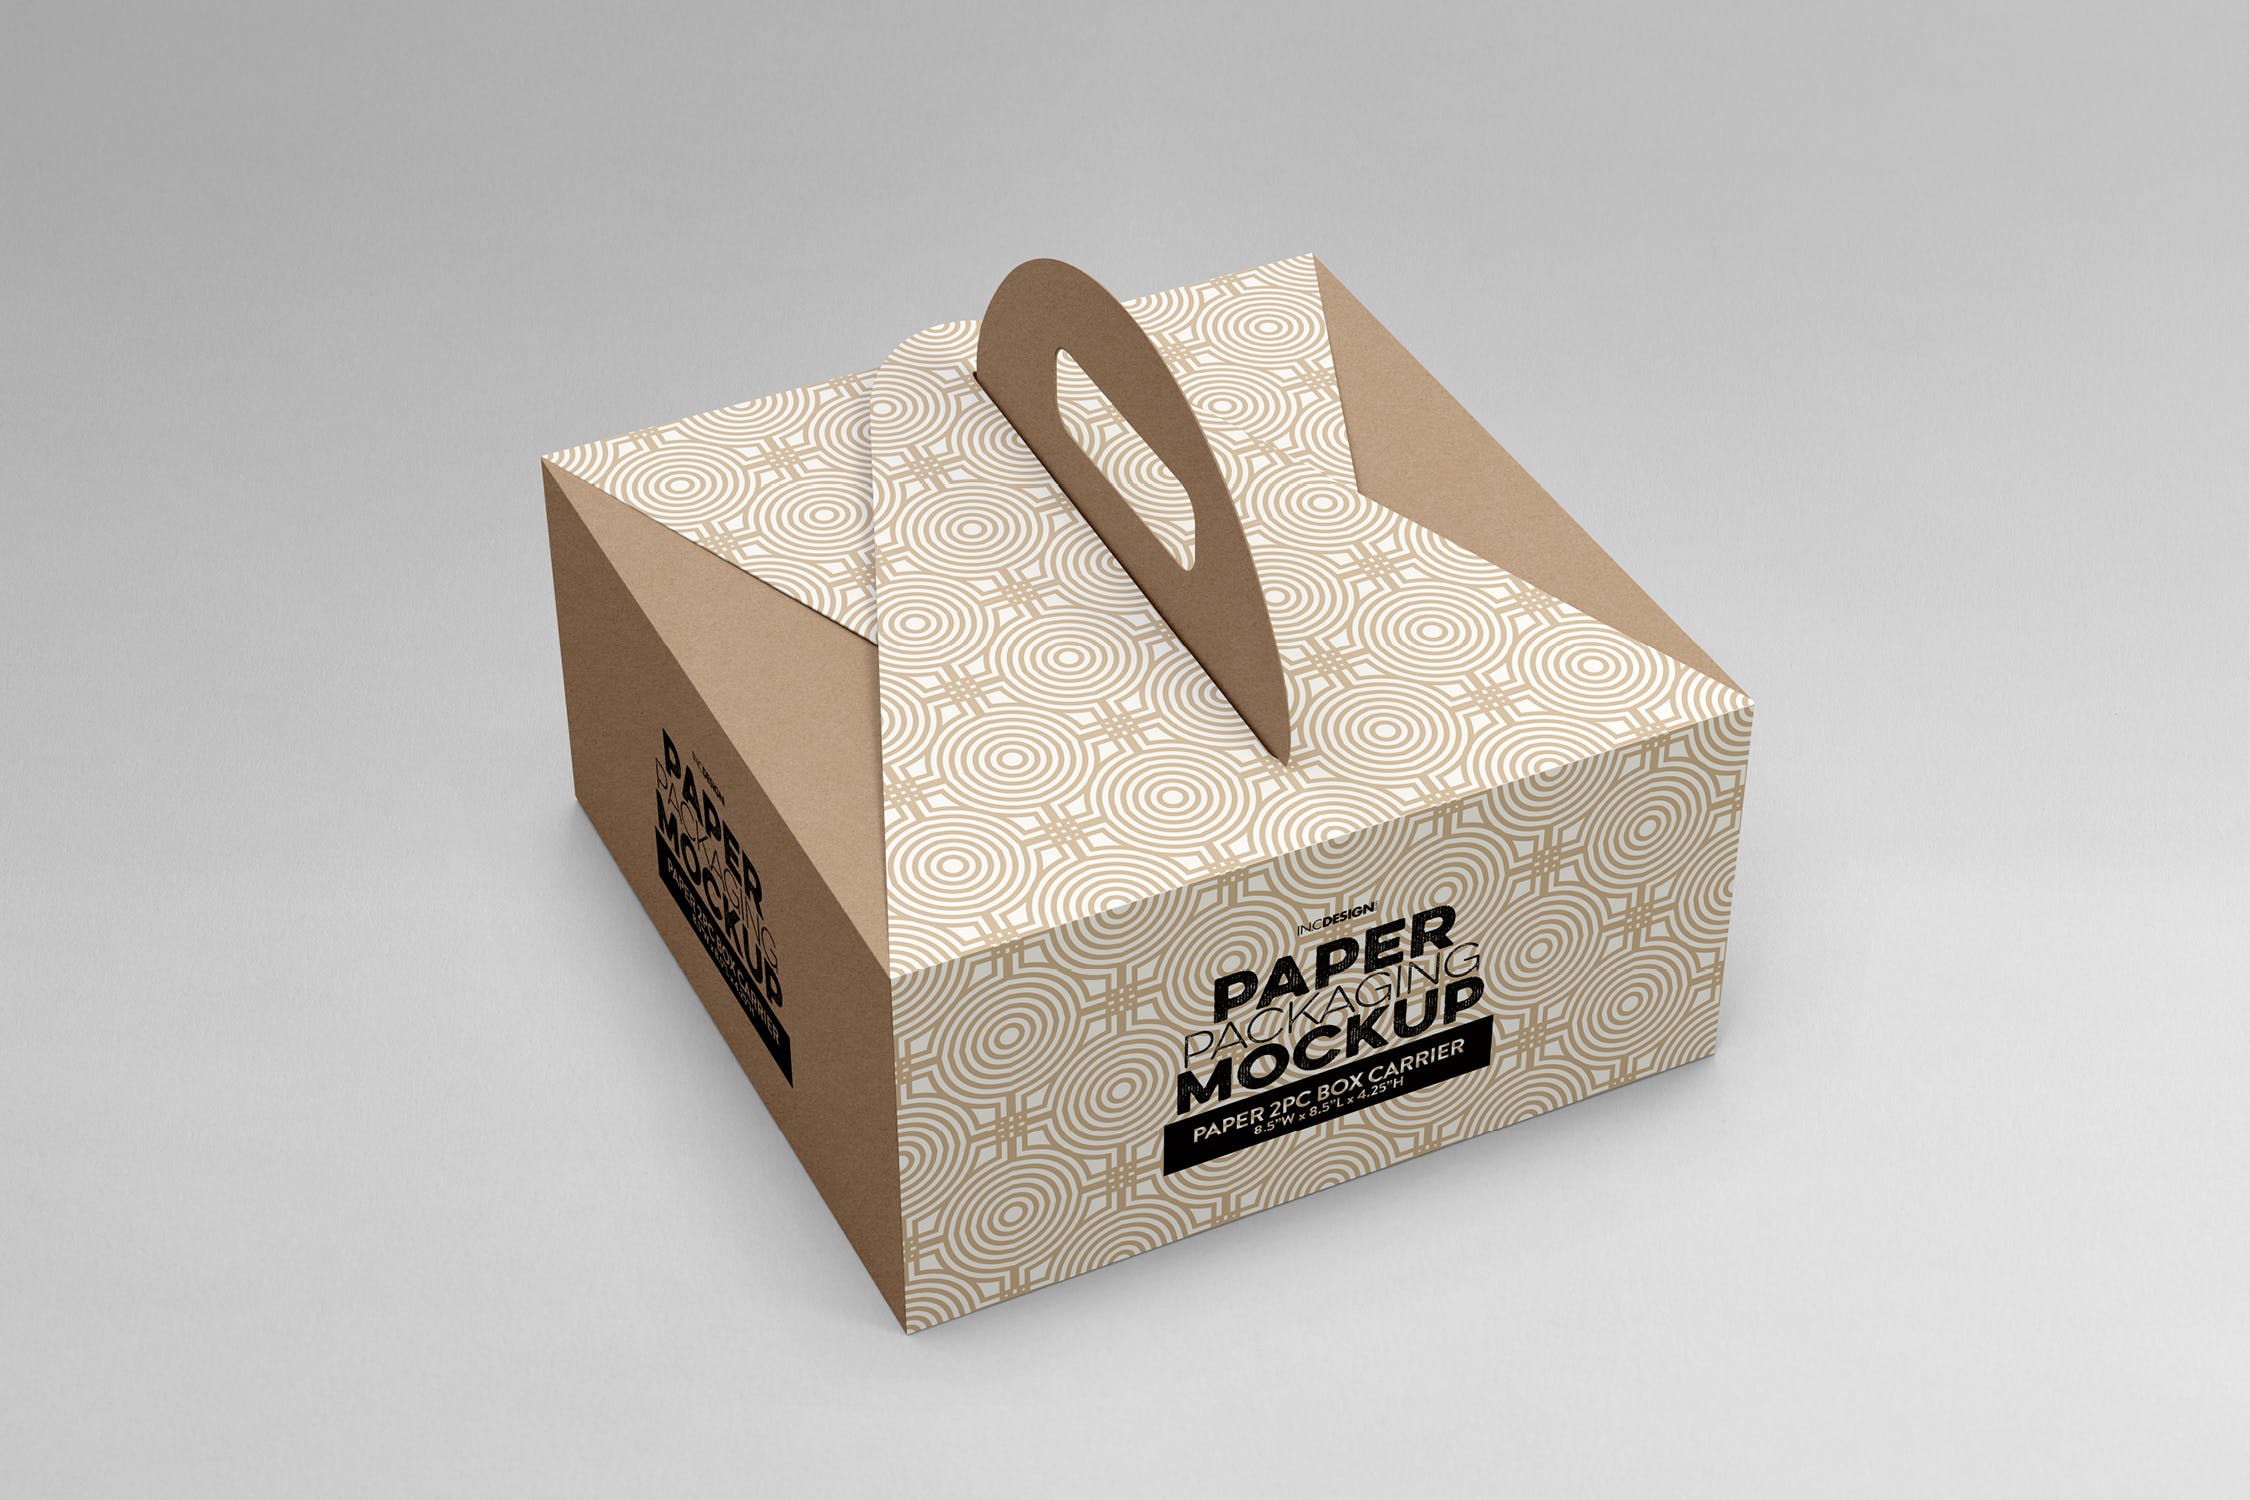 2件装纸盒包装设计样机模板 2pc PaperBox Carrier PackagingMockup插图(3)